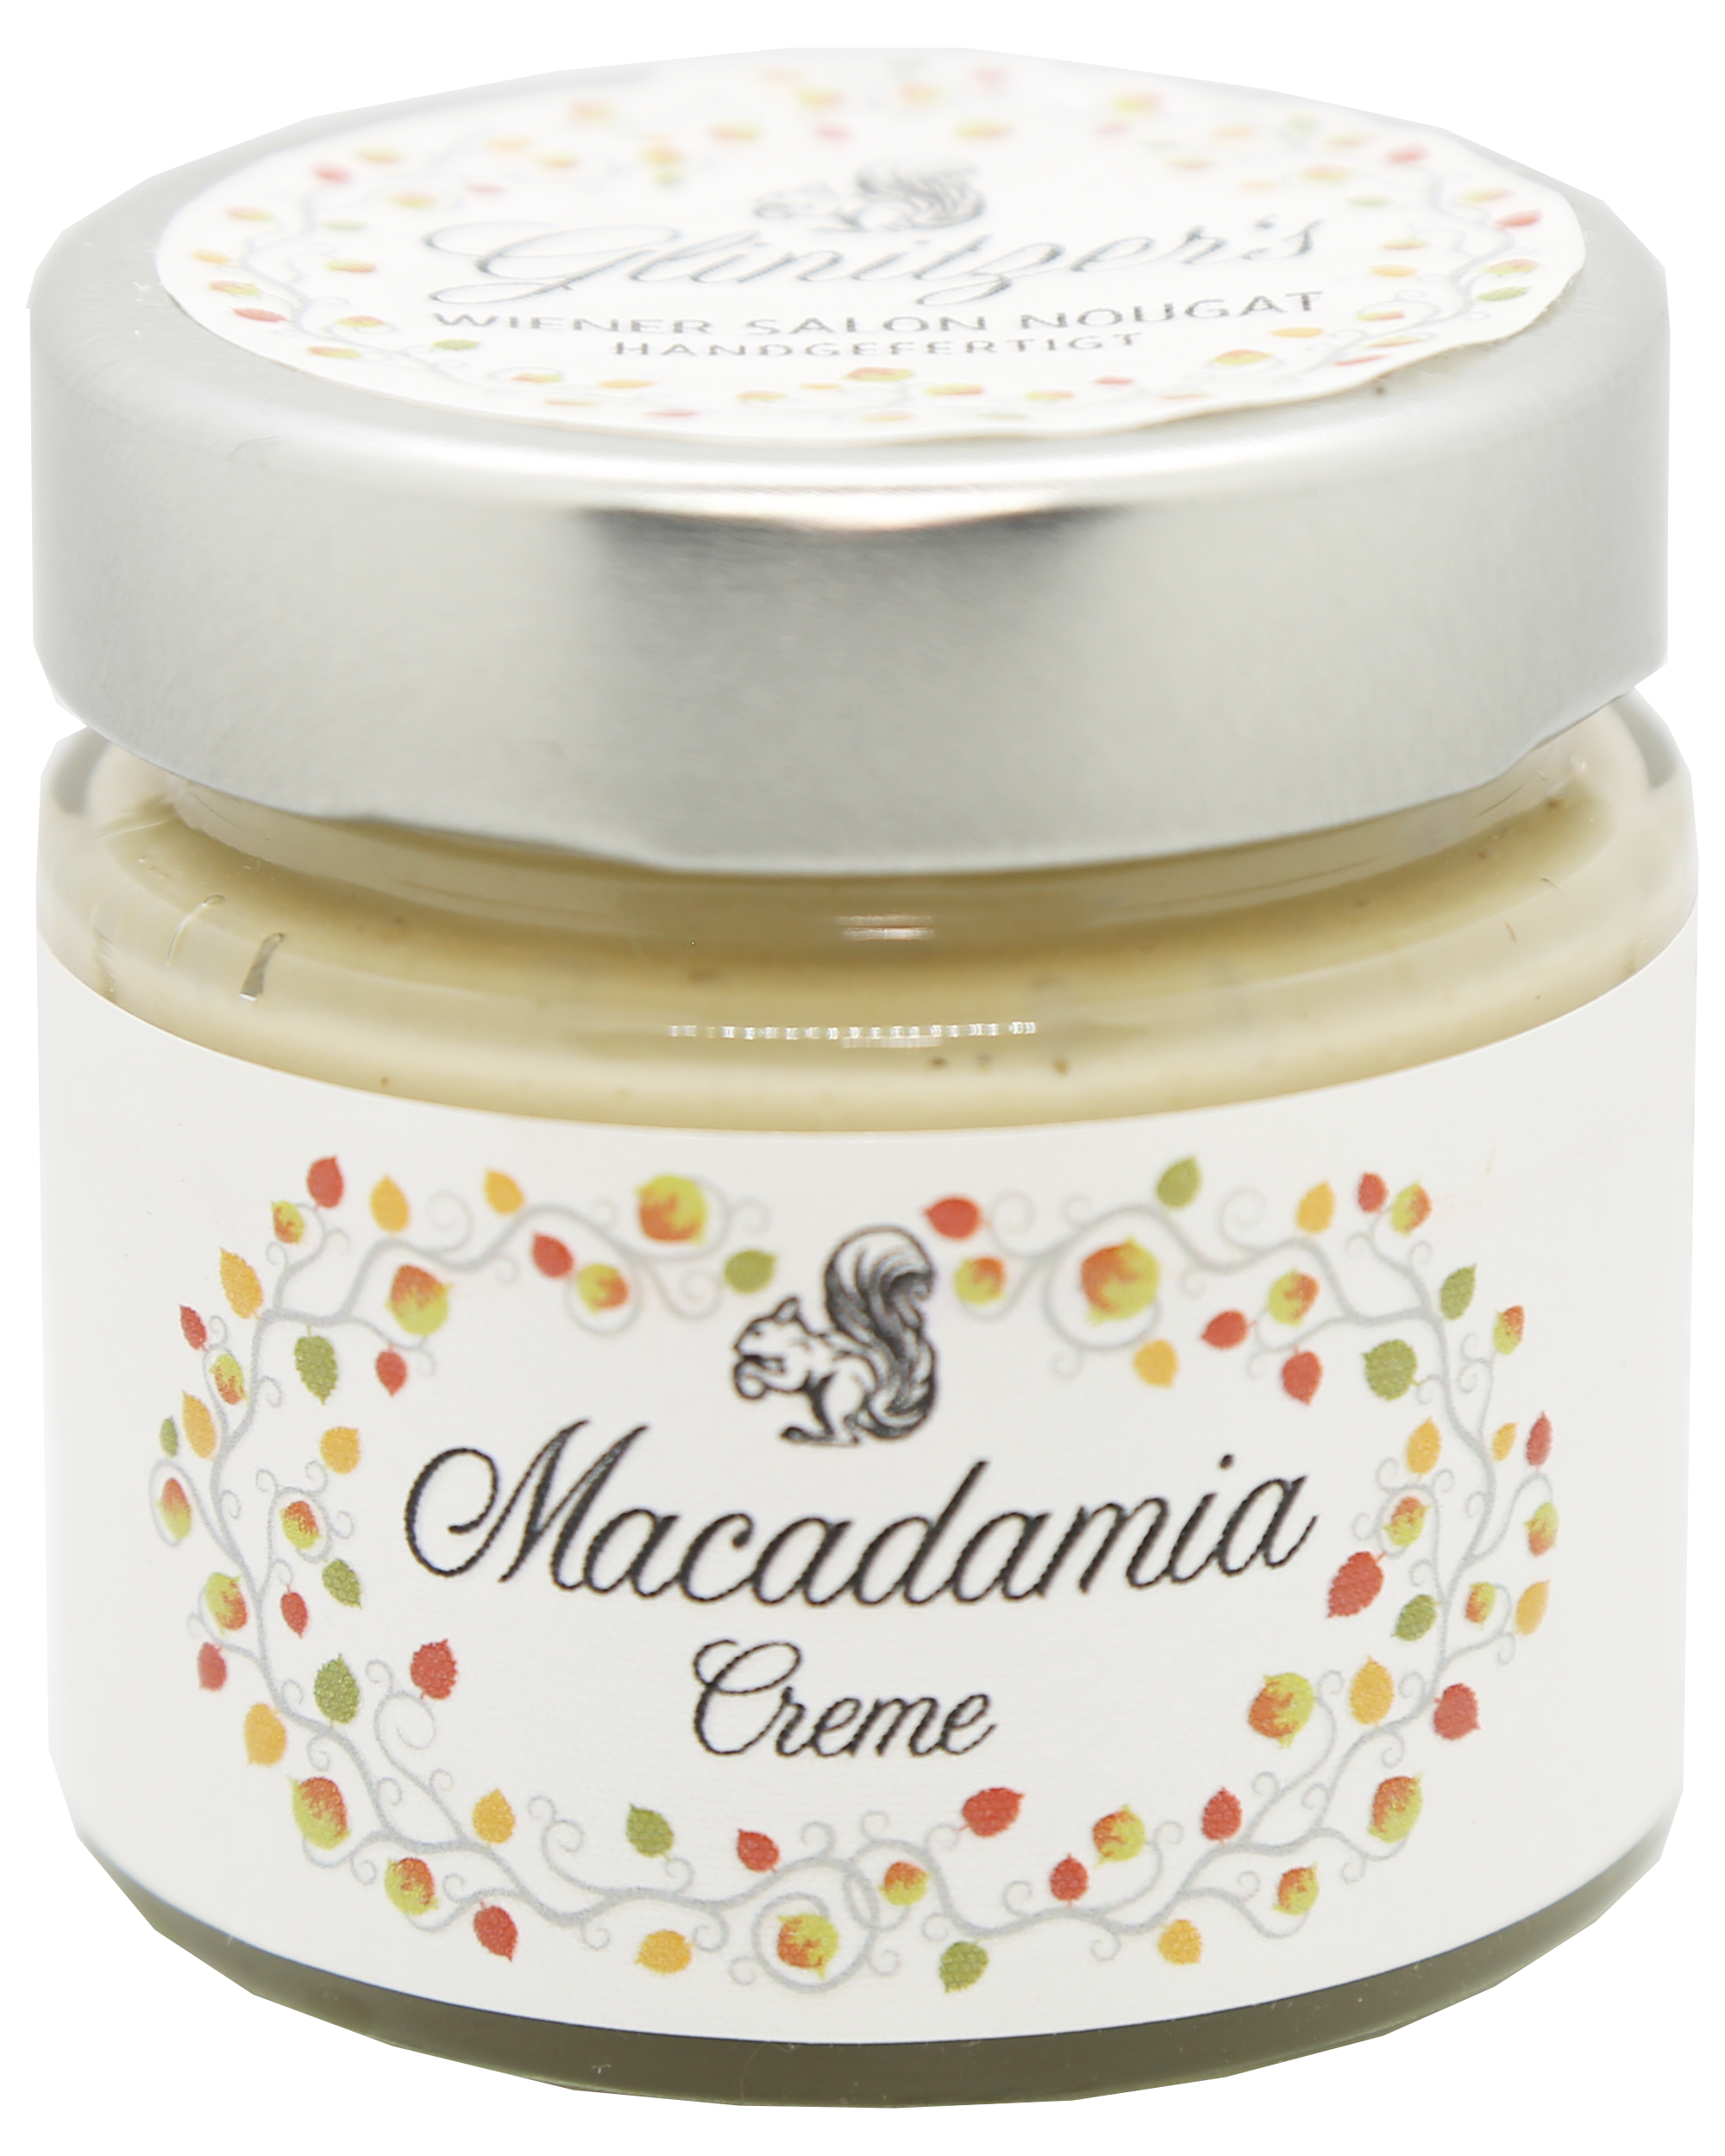 Macadamia-Creme, 100g